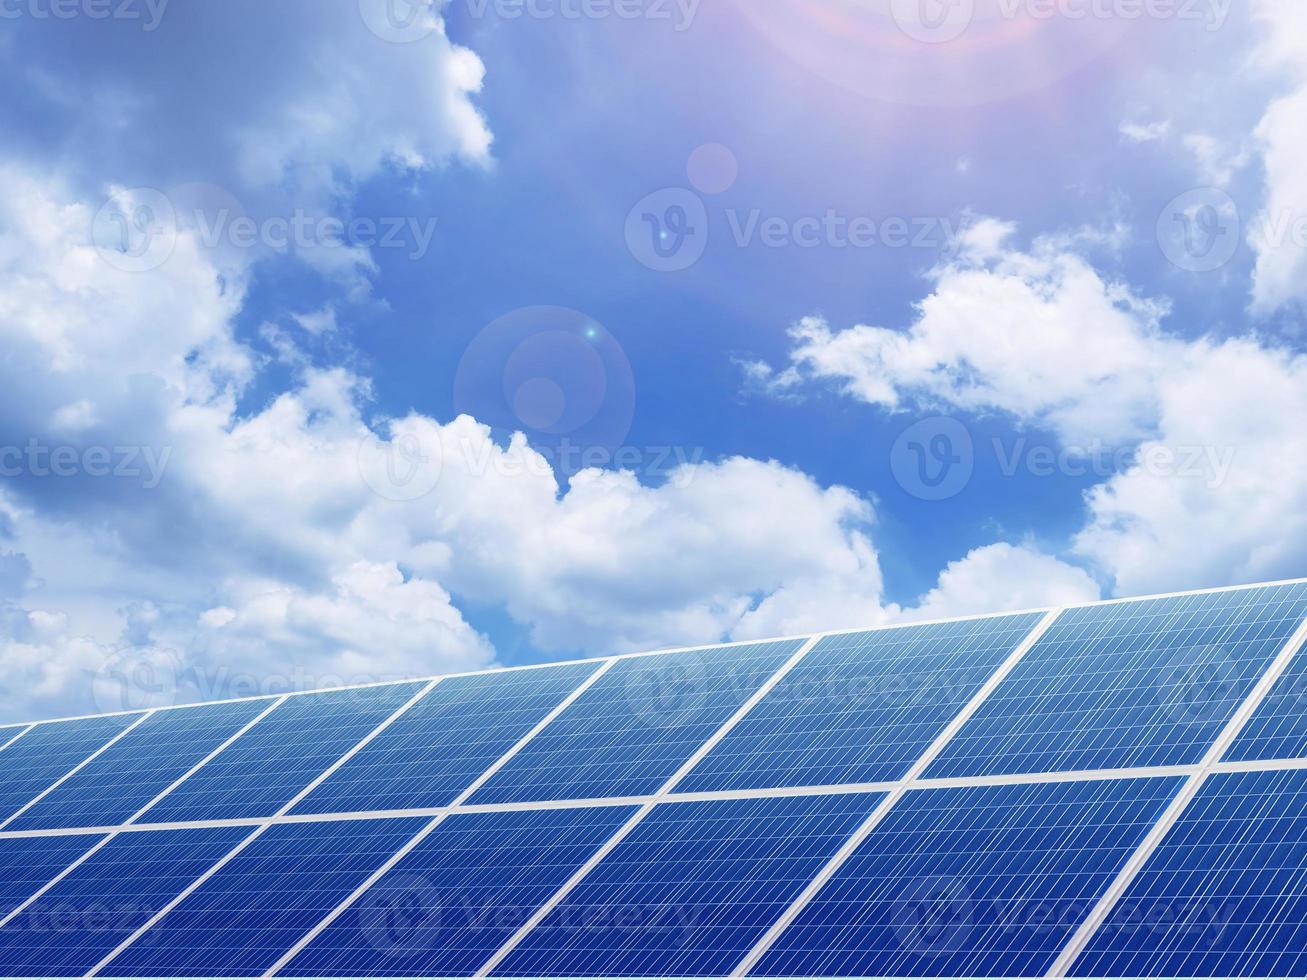 panneaux solaires photovoltaïques environnement thème concept d'énergie verte photo